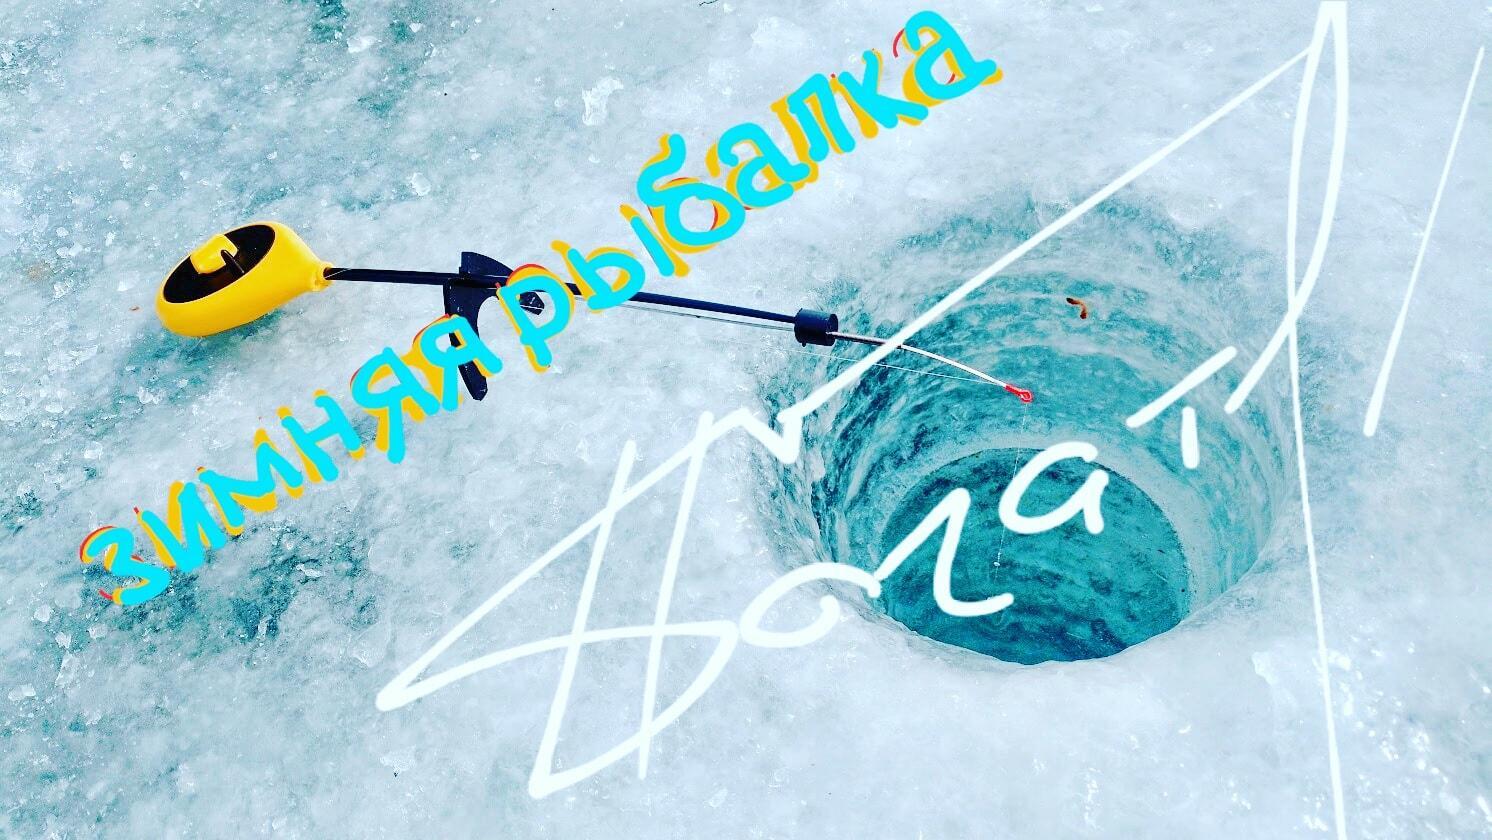 Зимняя рыбалка 